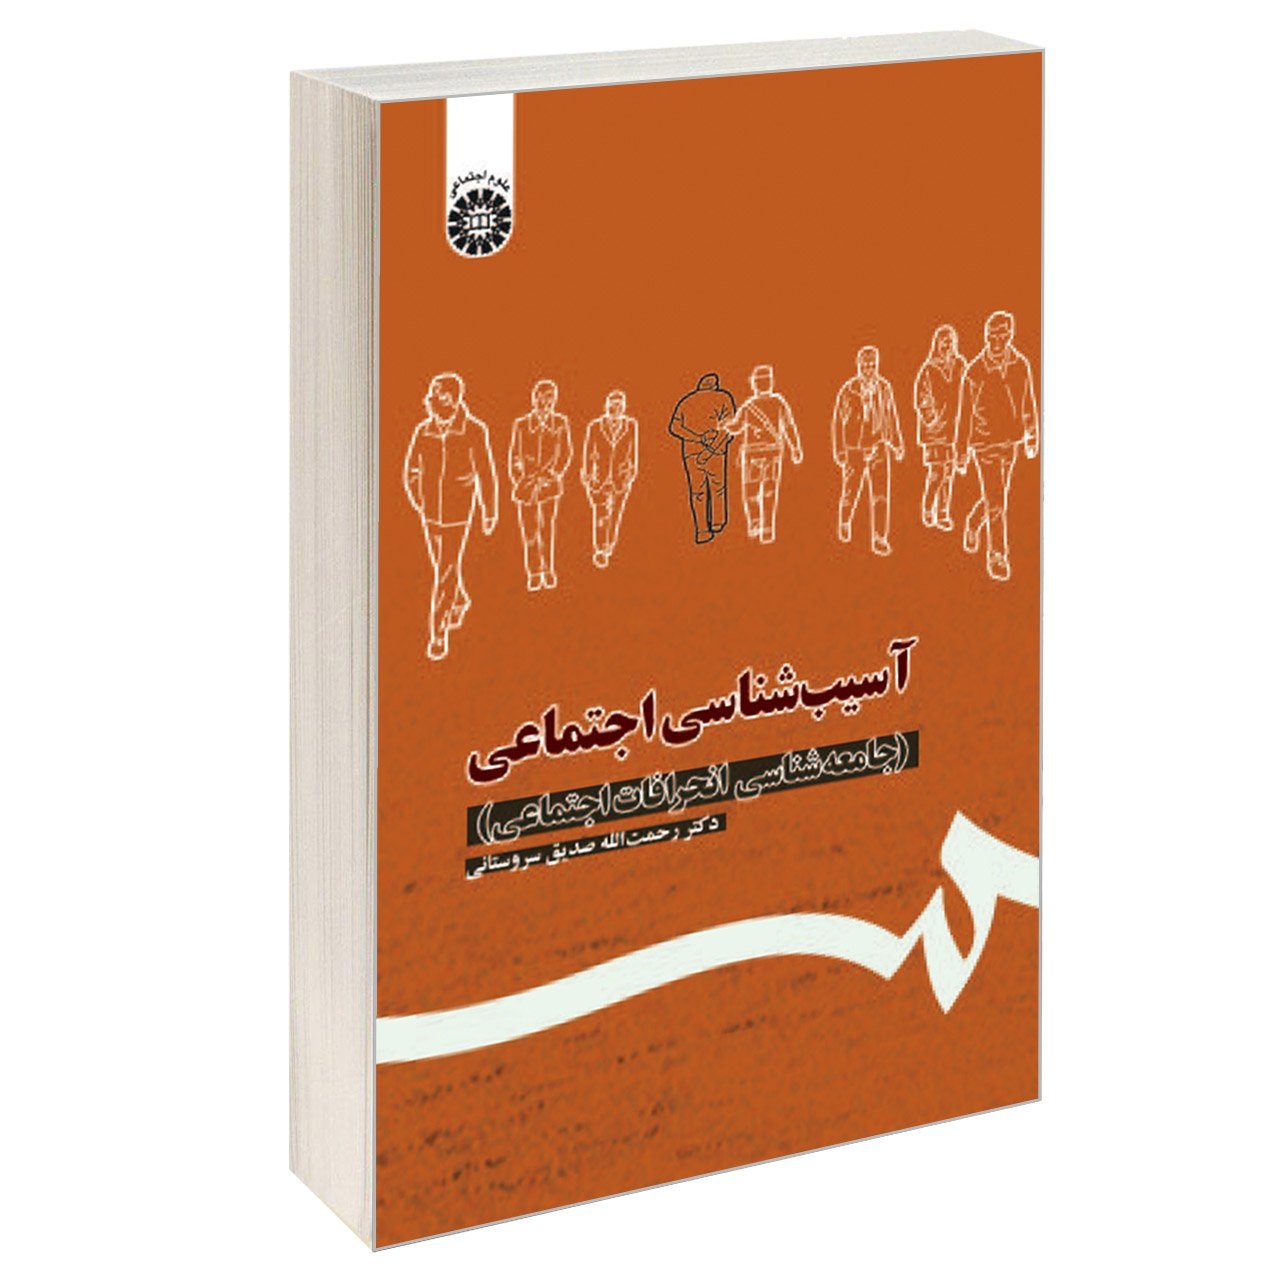 کتاب آسیب شناسی اجتماعی (جامعه شناسی انحرافات اجتماعی) اثر دکتر رحمت الله صدیق سروستانی نشر سمت